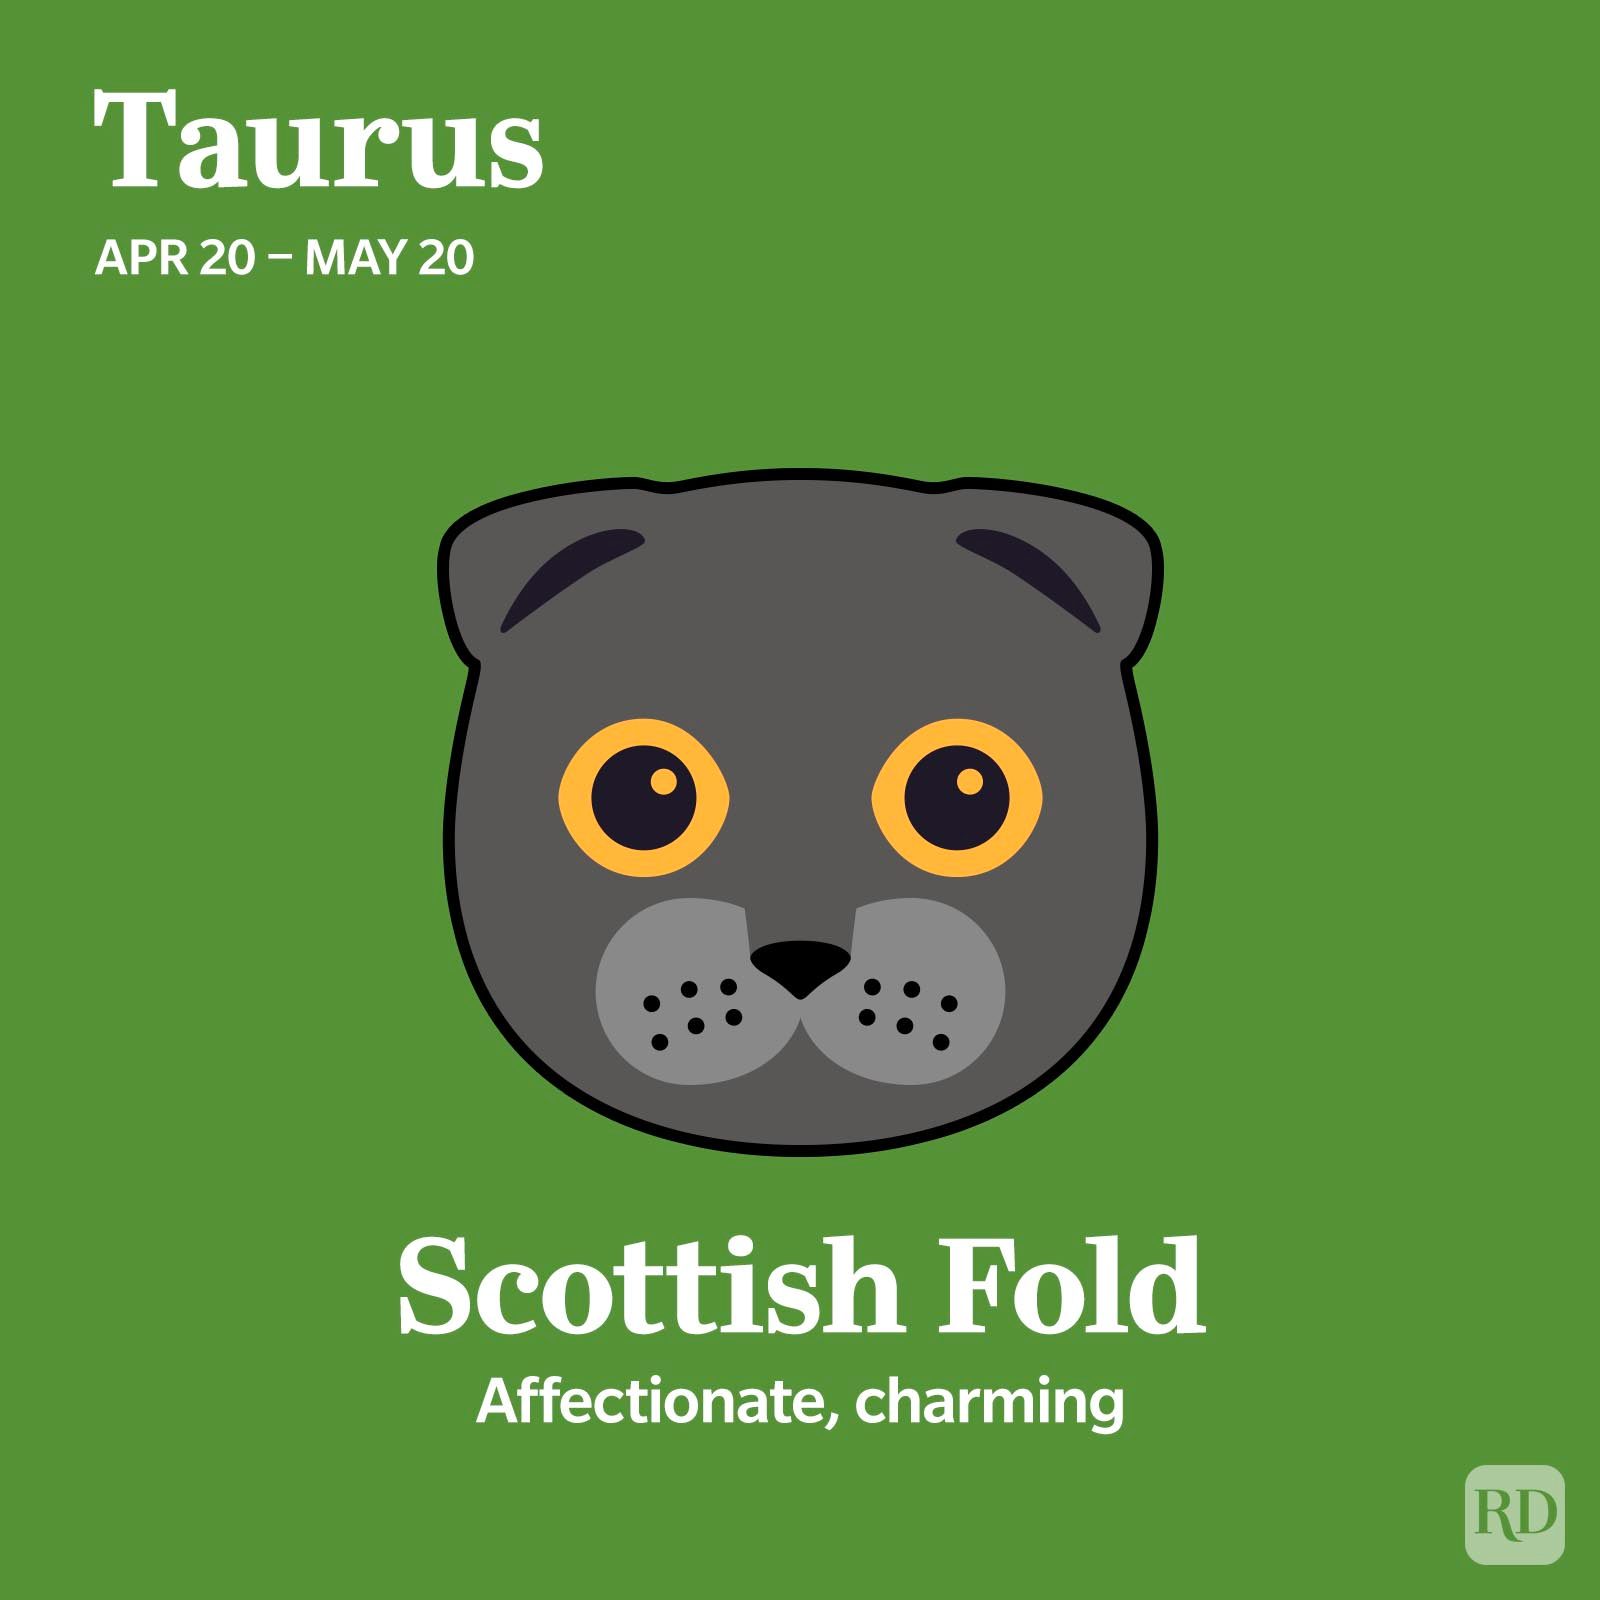 Scottish Fold Taurus